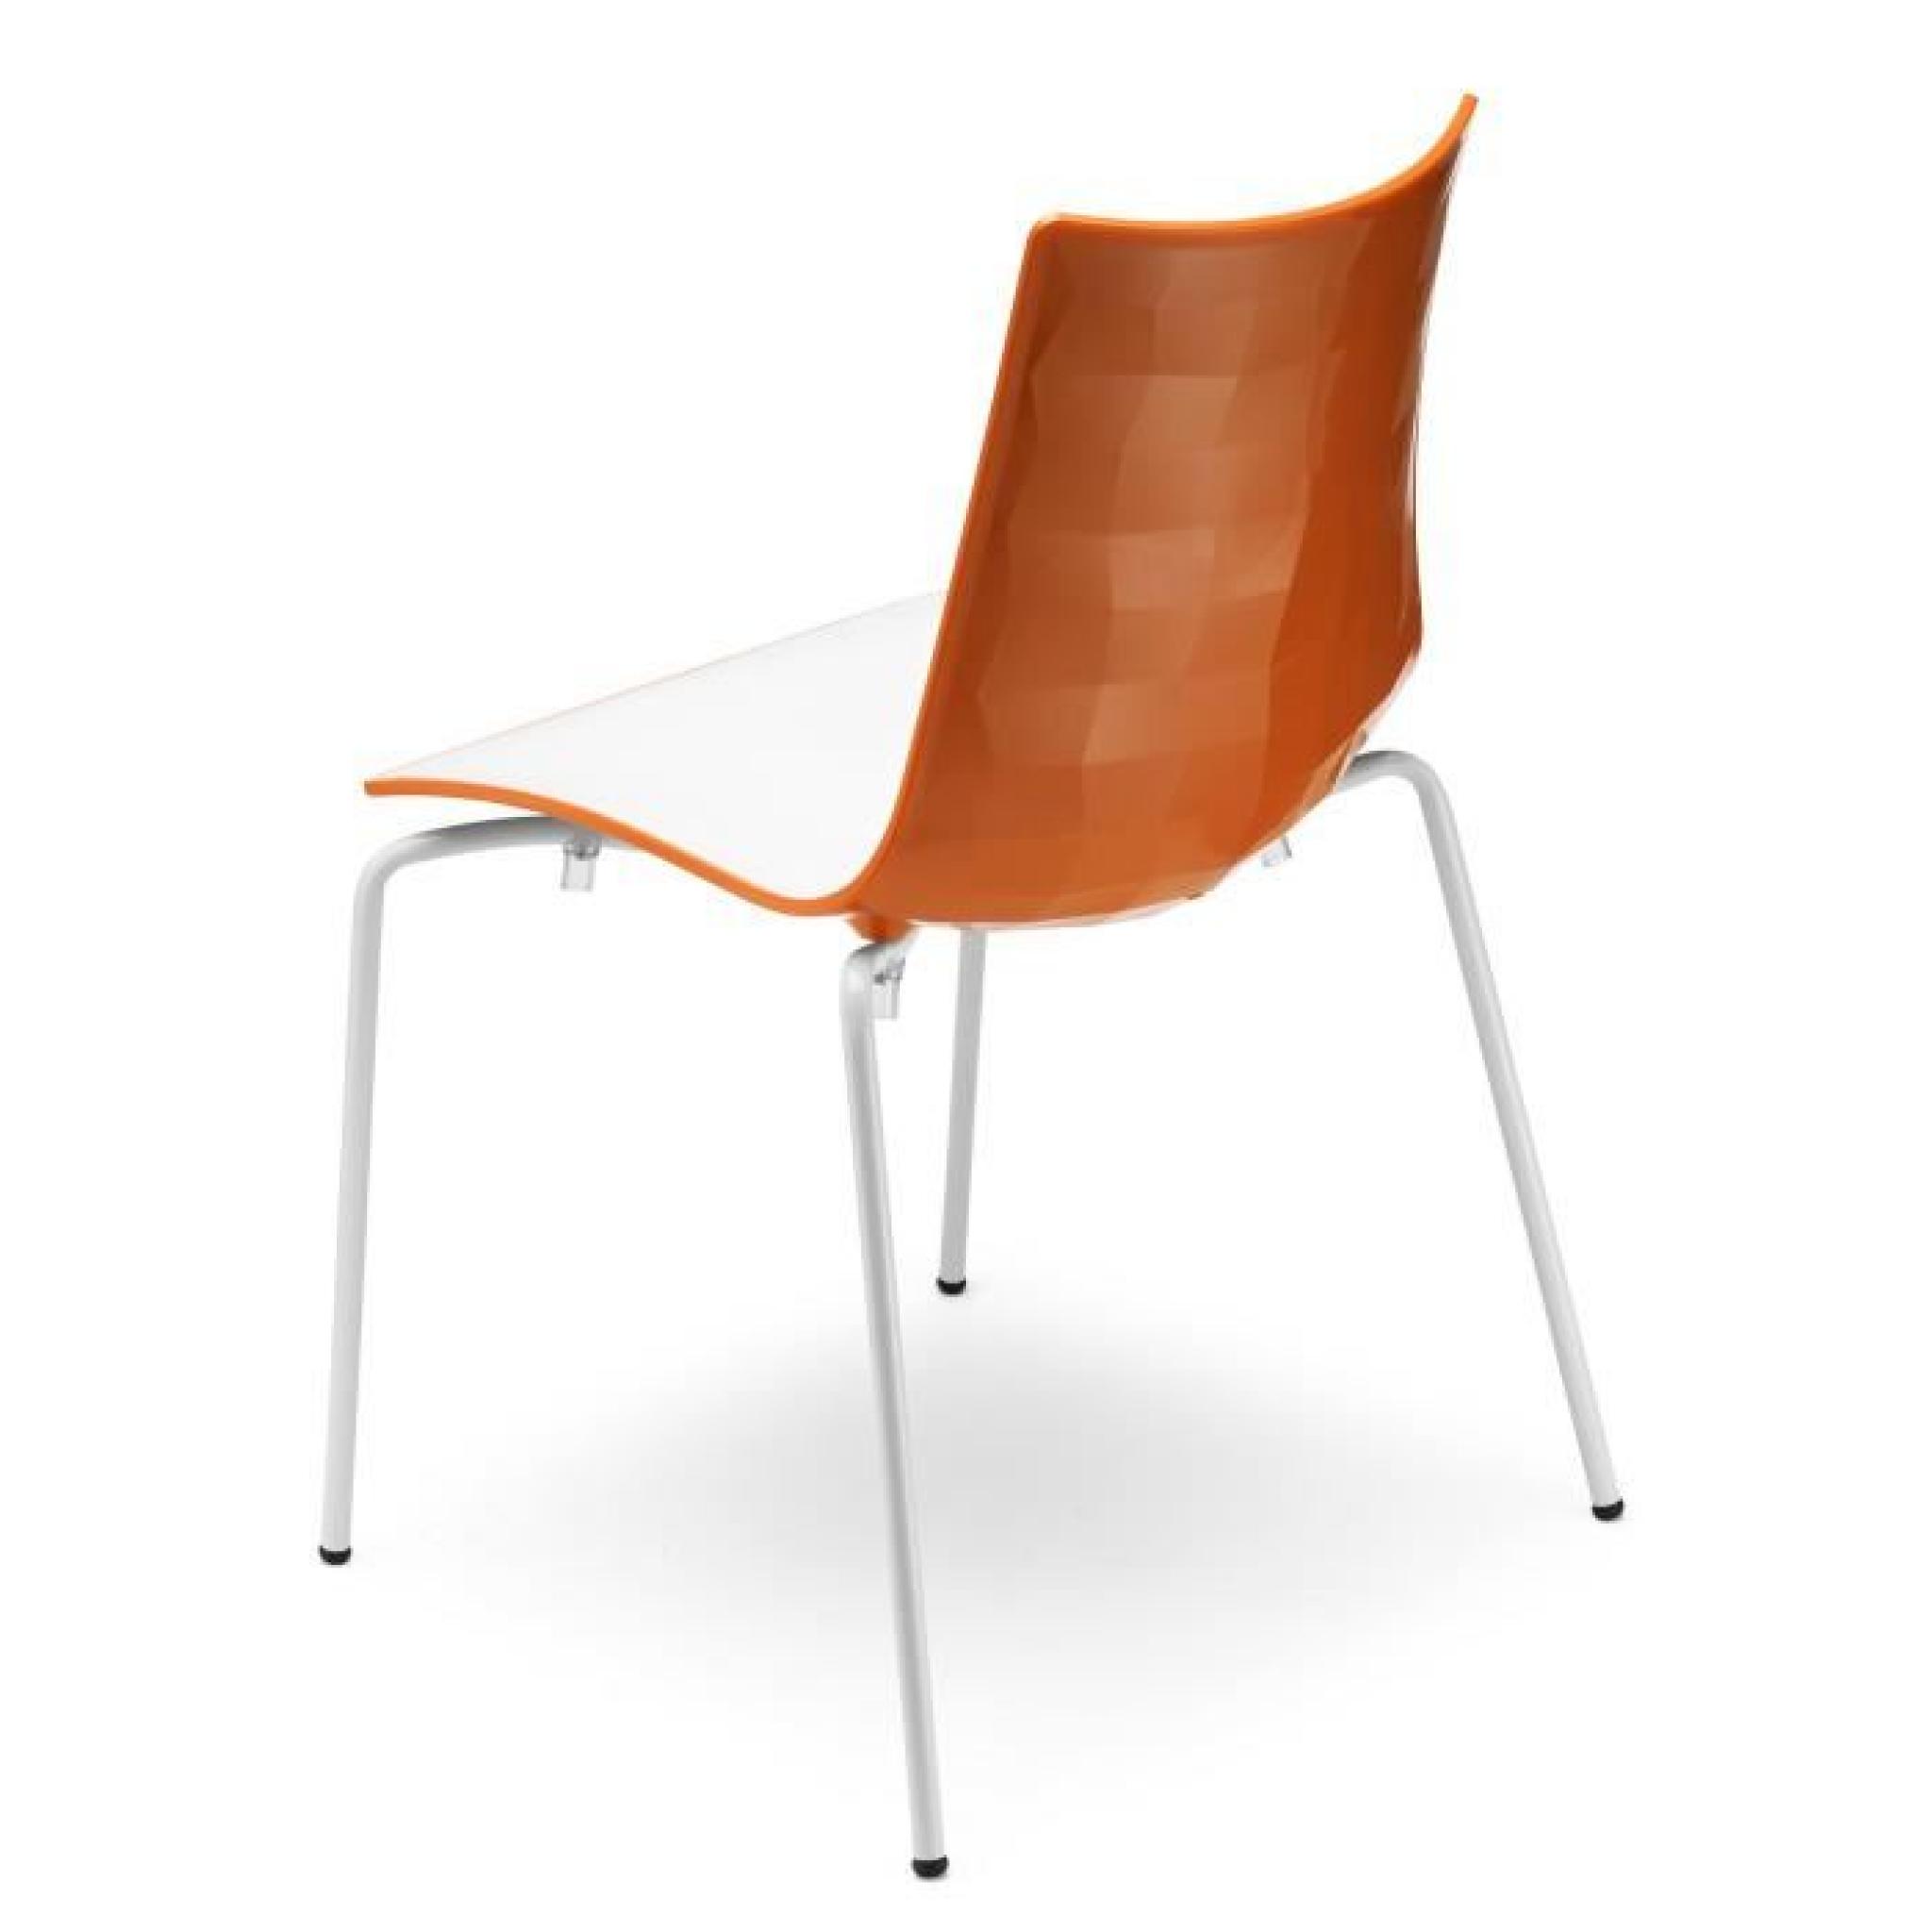 Chaise design blanche et orange avec pieds blan…